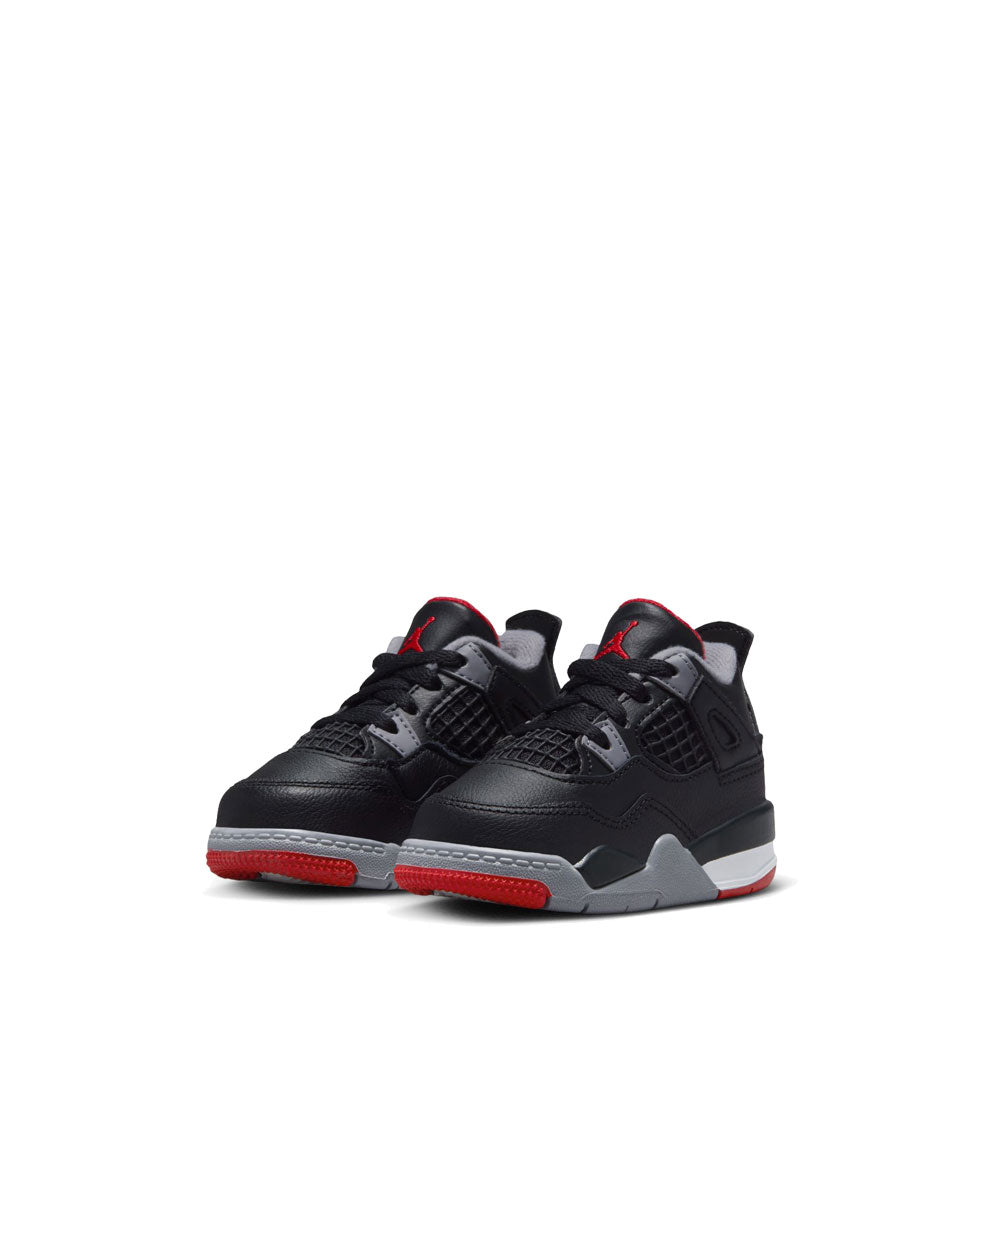 Air Jordan 4 Retro Black/Fire Red/Cement Td BQ7670-006